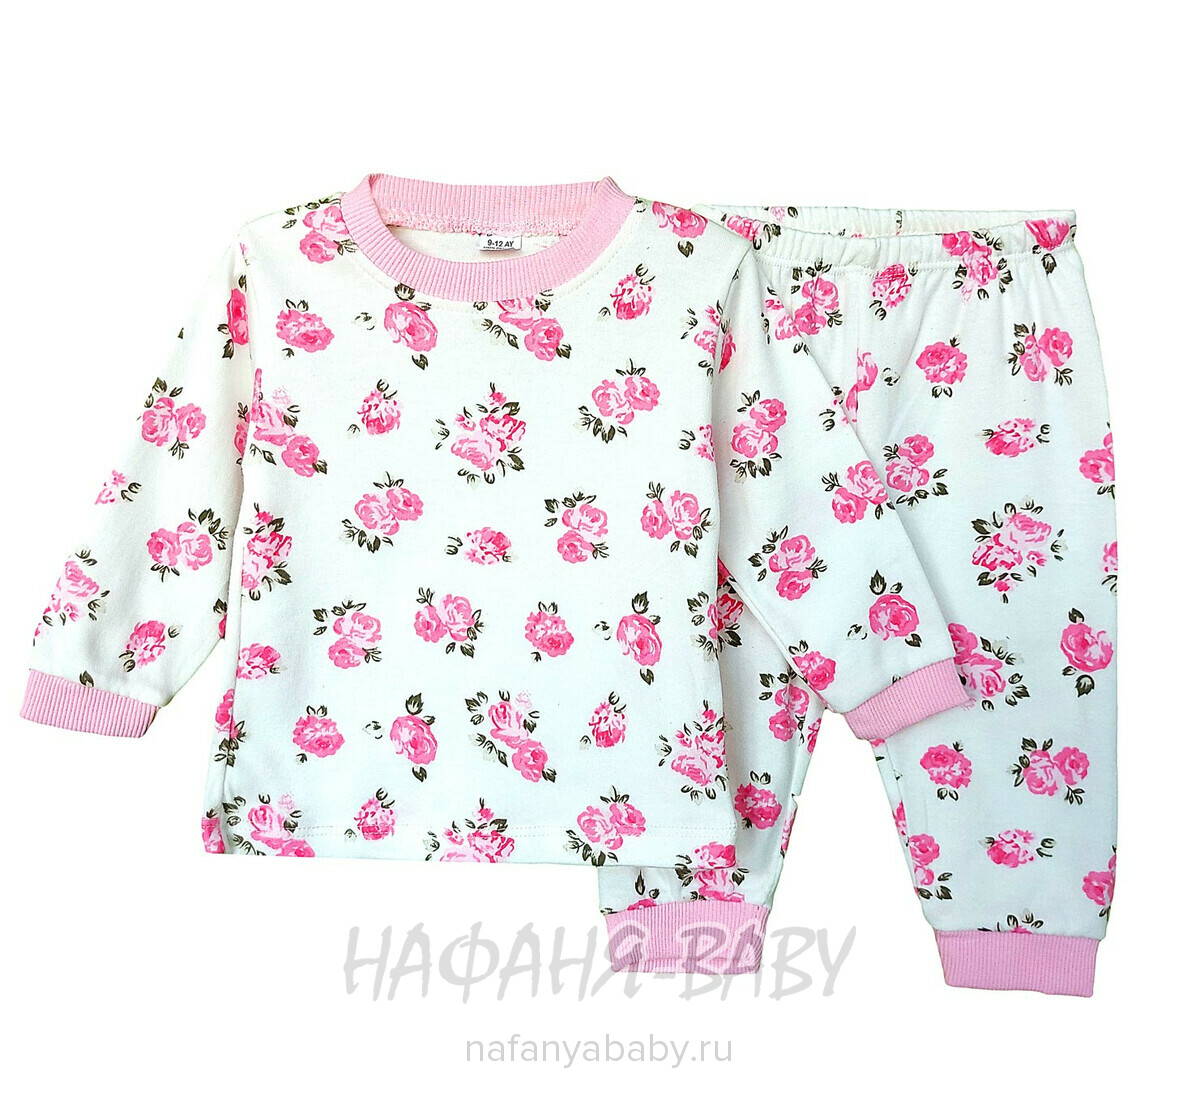 Детский костюм для новорожденных SEVILLA арт: 4202 от 6 до 12 мес, цвет кремовый с розовым, оптом Турция